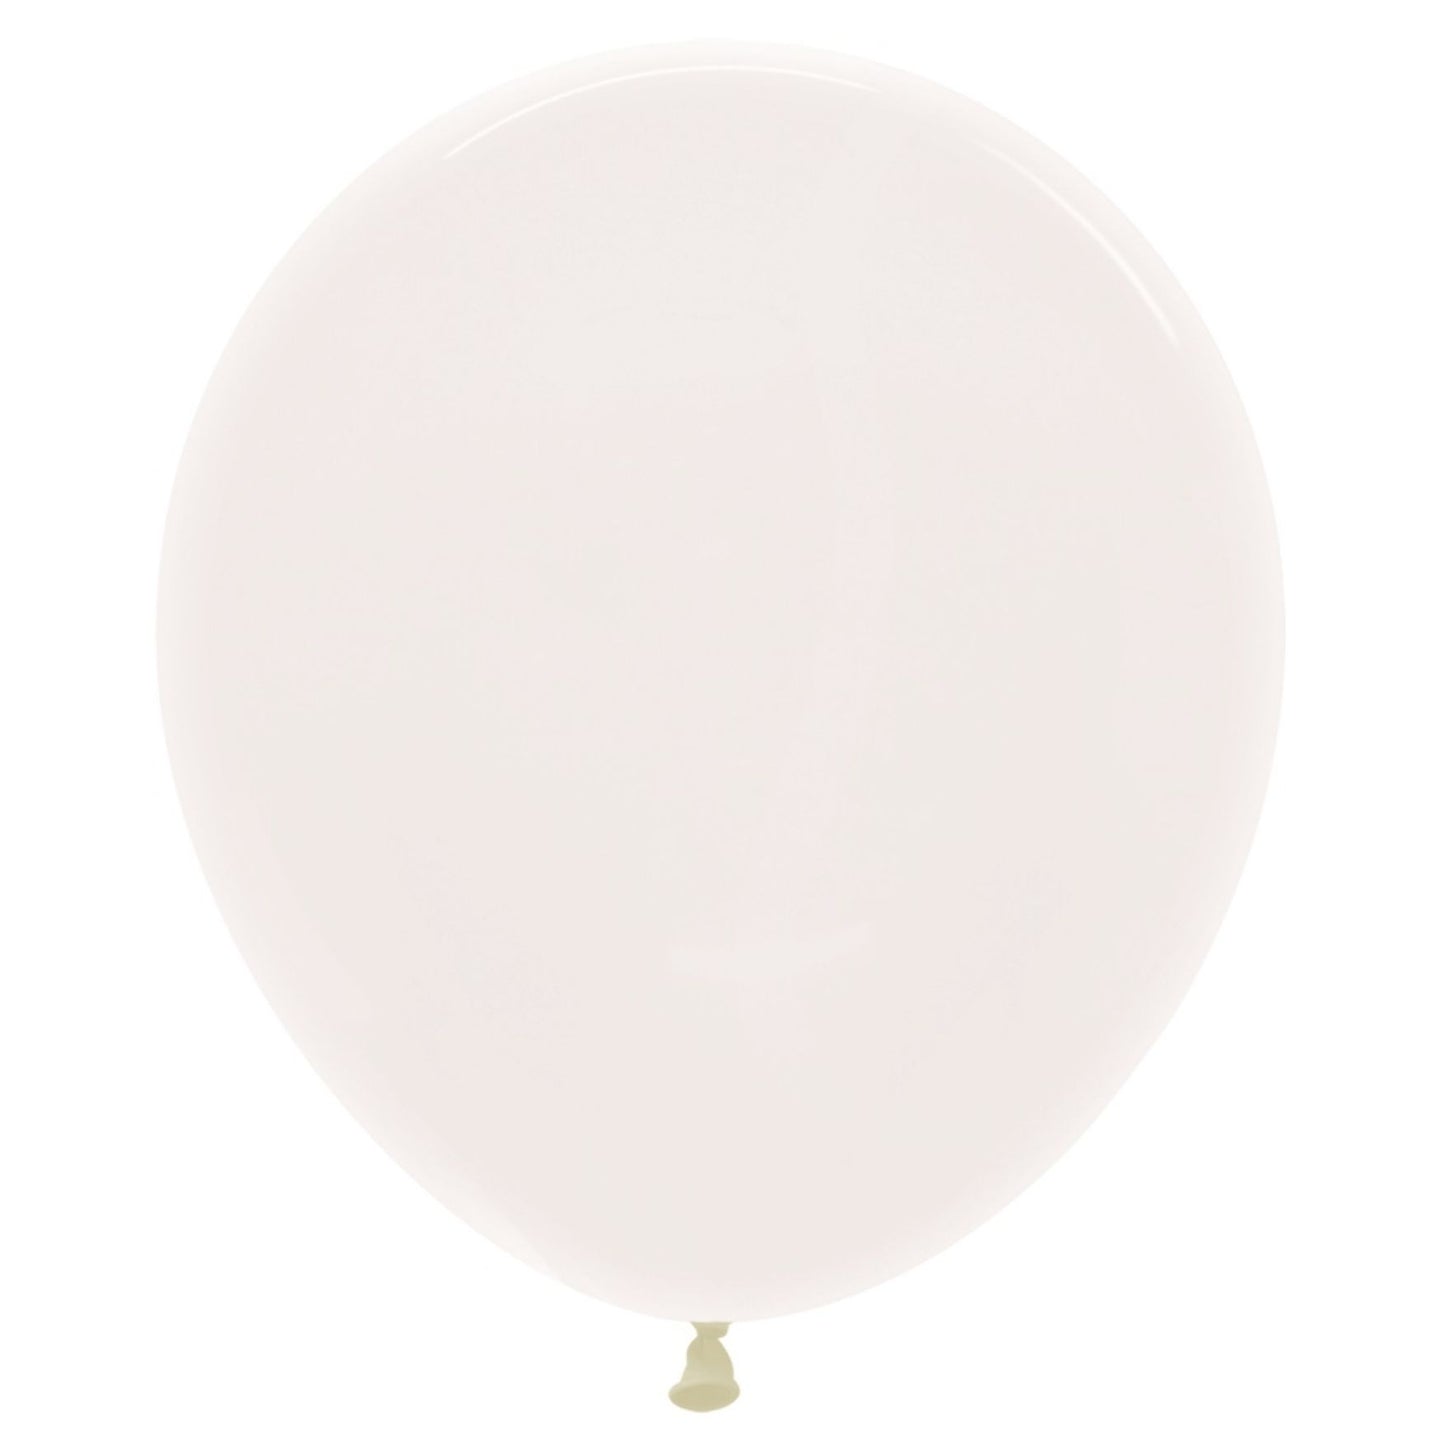 Ballon Latex Transparent (45 cm) à l'hélium